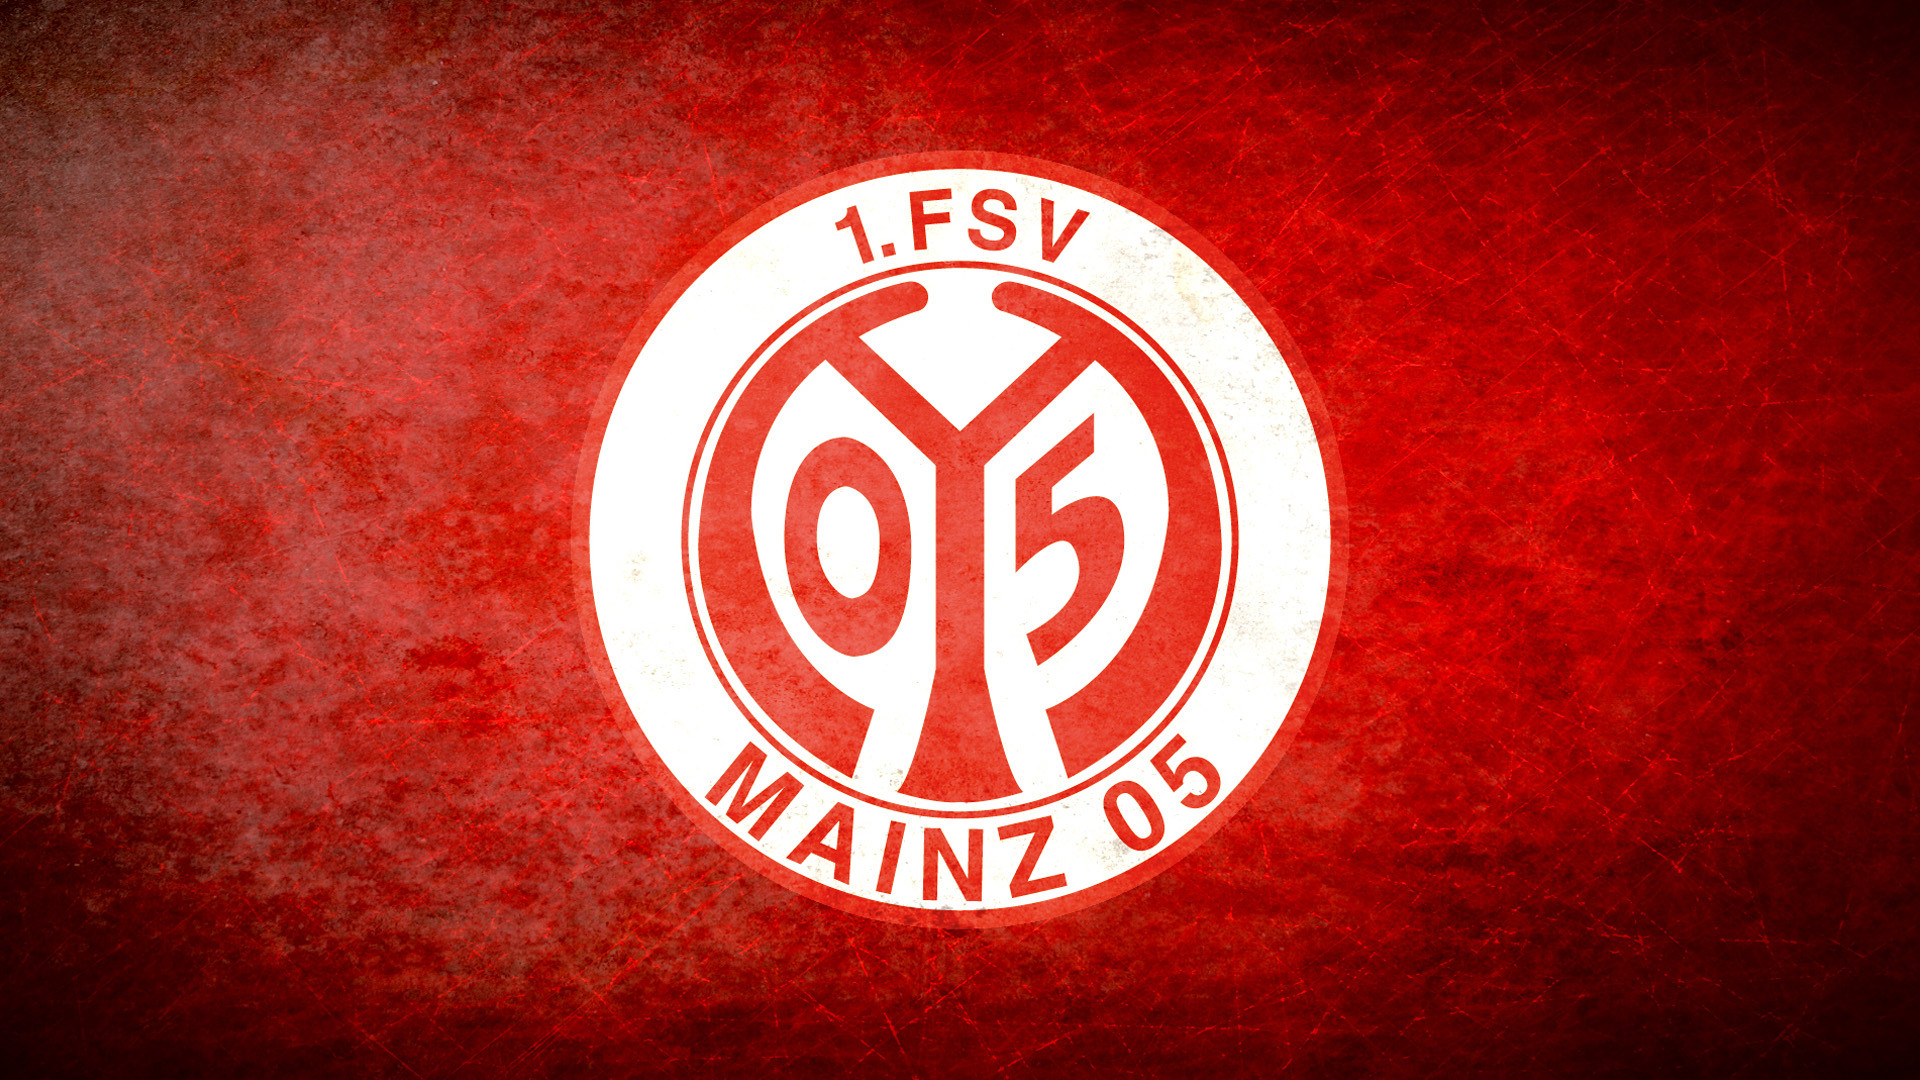 1 FSV Mainz 05 Wallpapers -01, Football Wallpapers, Football .